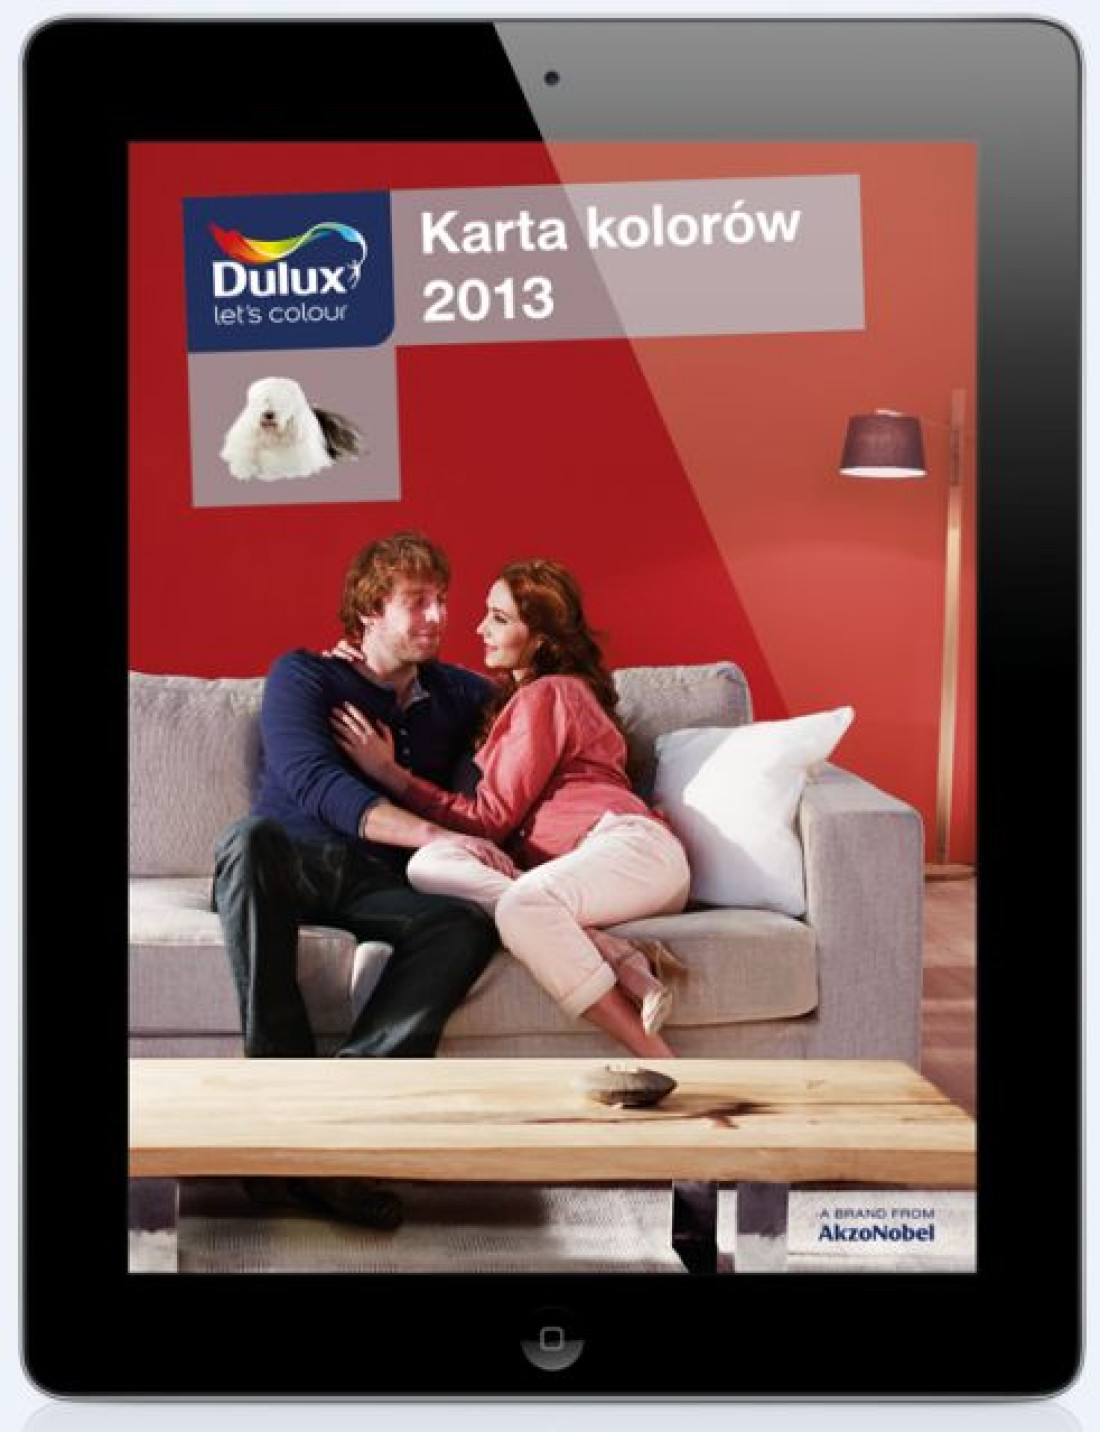 Karta Kolorów Dulux 2013 - nowy mobilny katalog Dulux